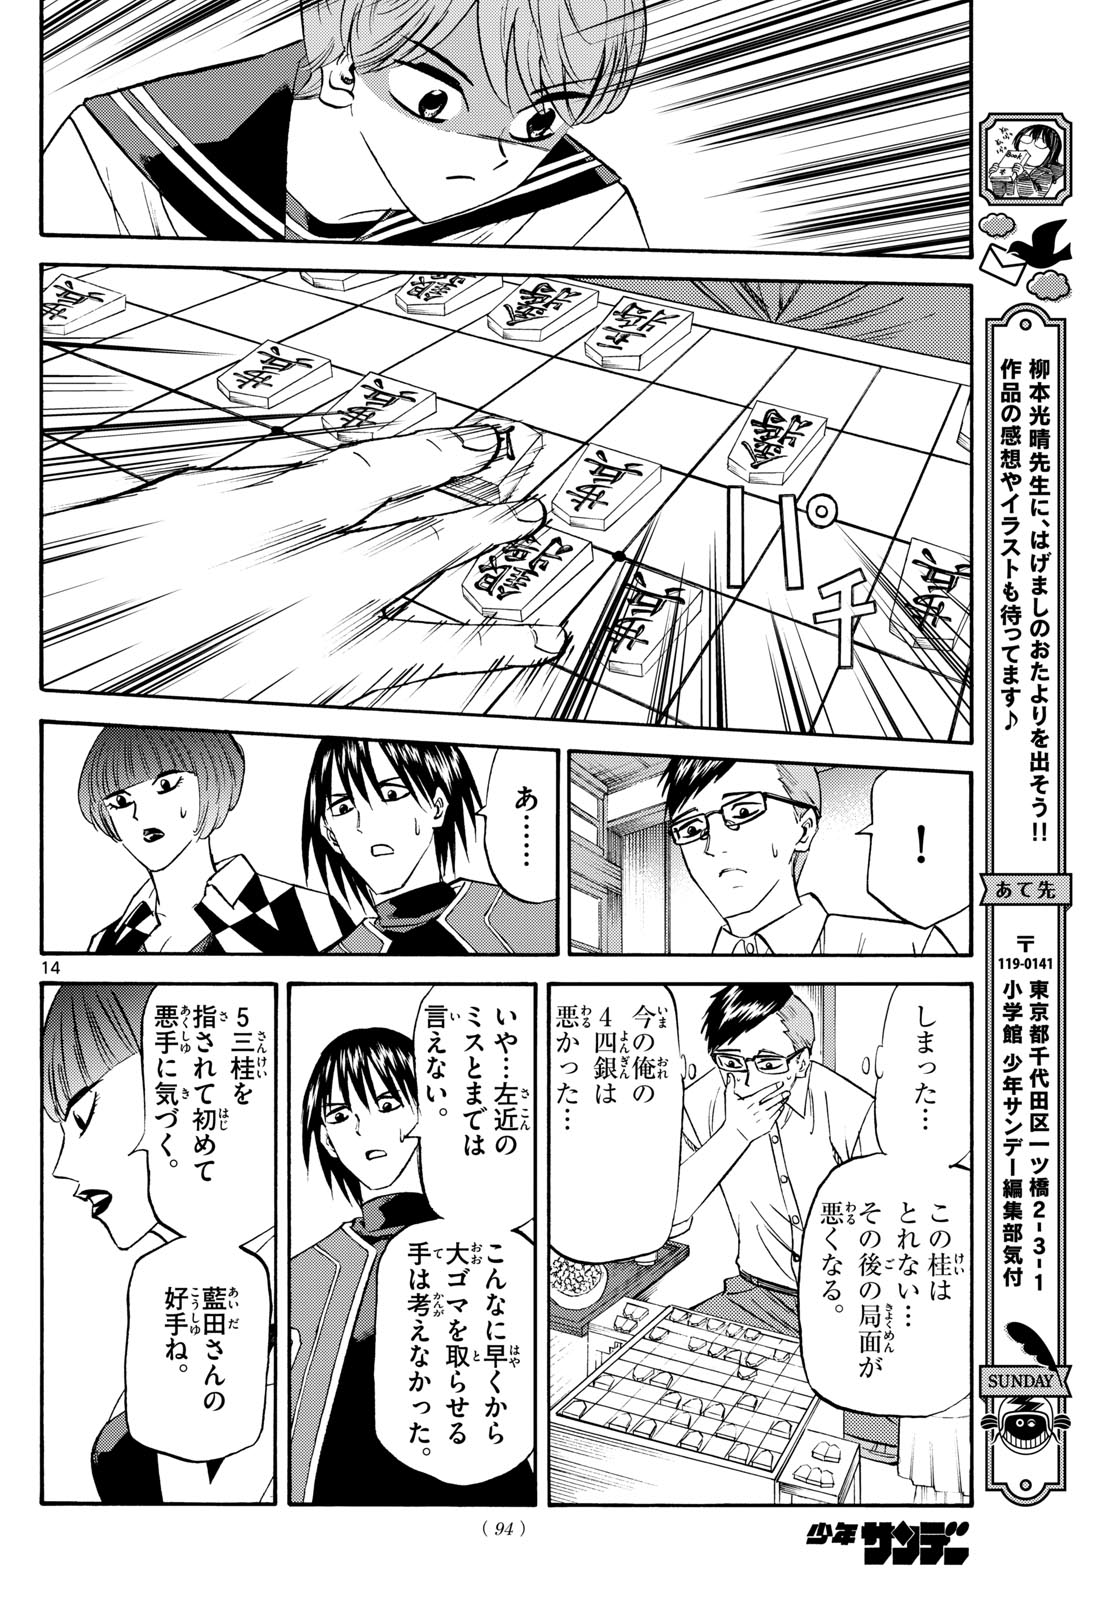 Tatsu to Ichigo - Chapter 196 - Page 14